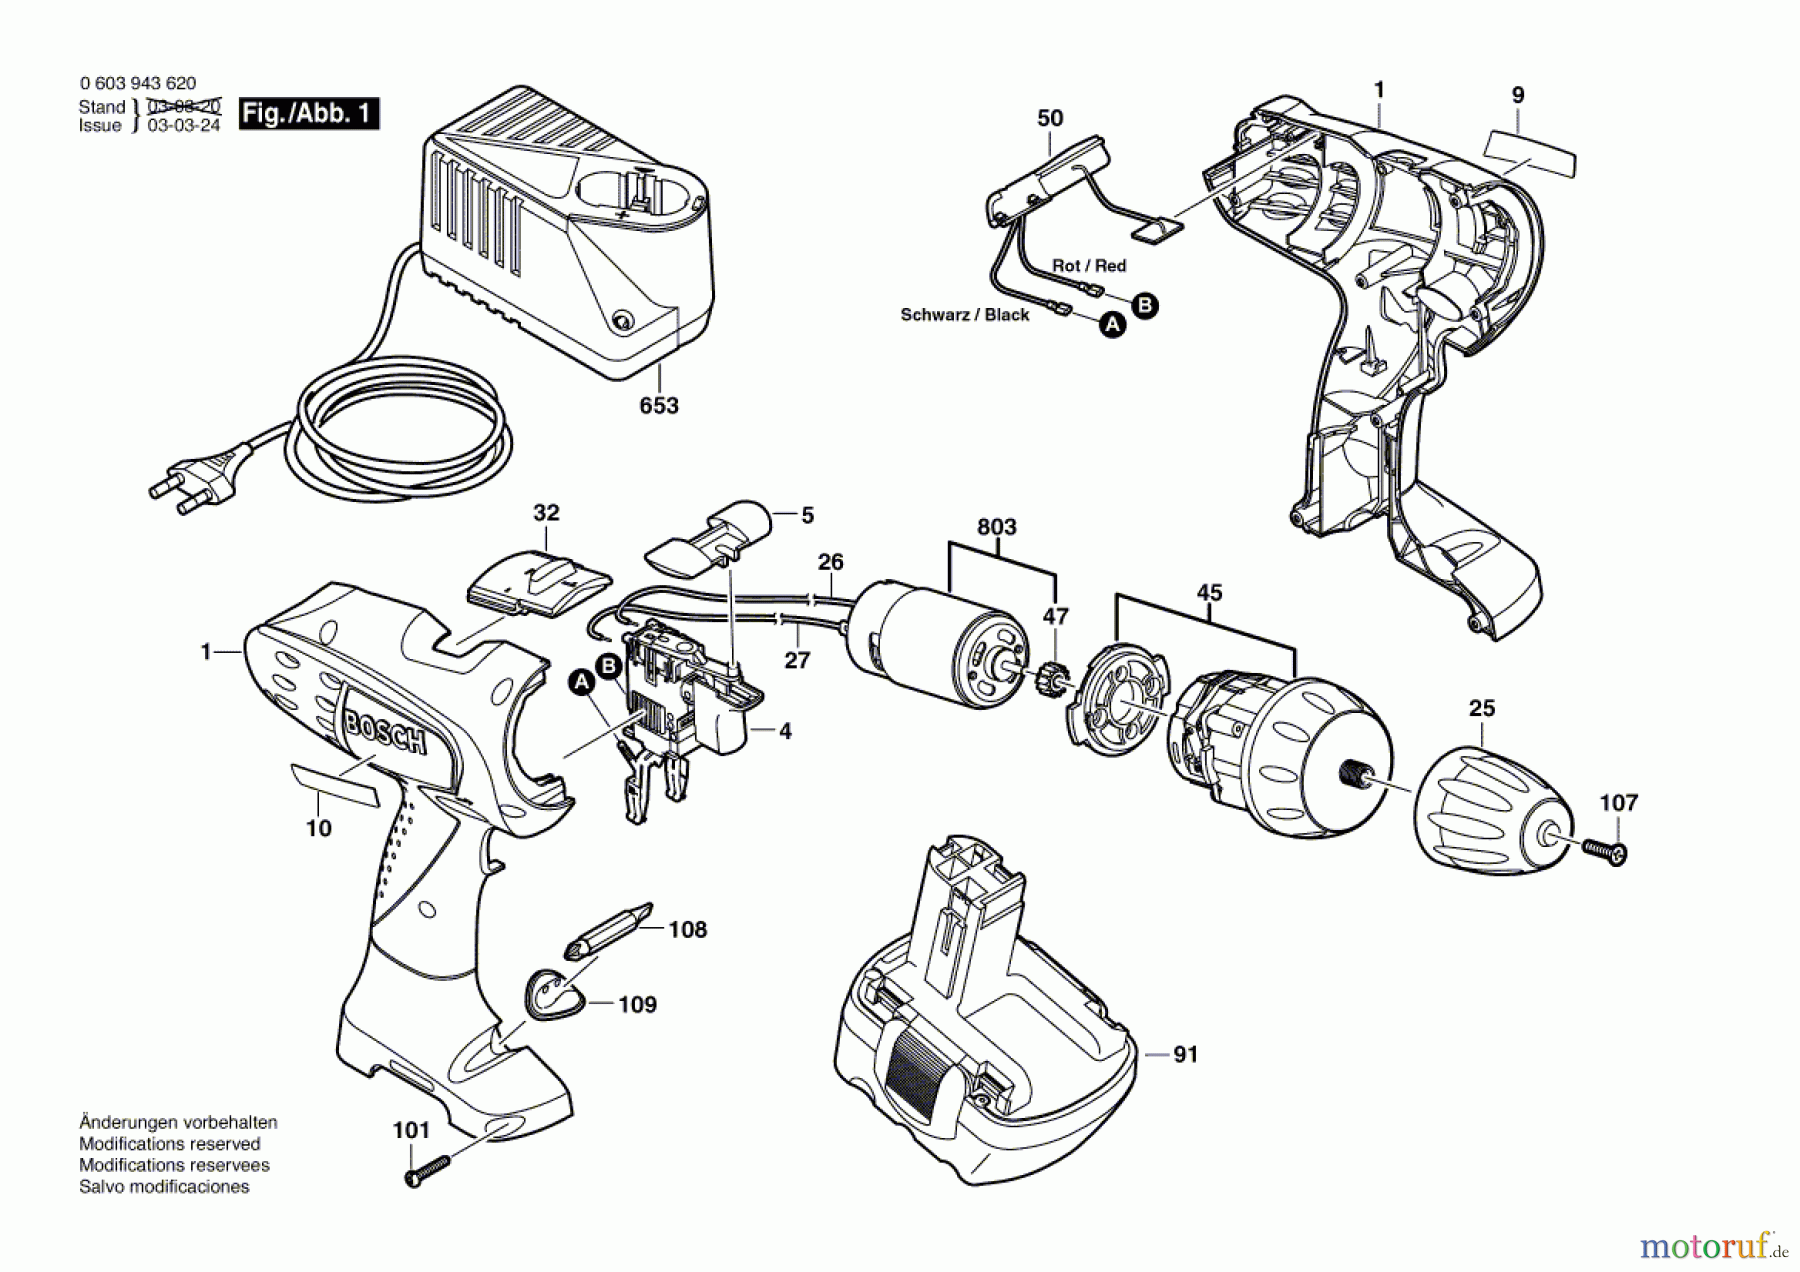  Bosch Werkzeug Schlagbohrmaschine PSR 9,6 VE-2 Seite 1